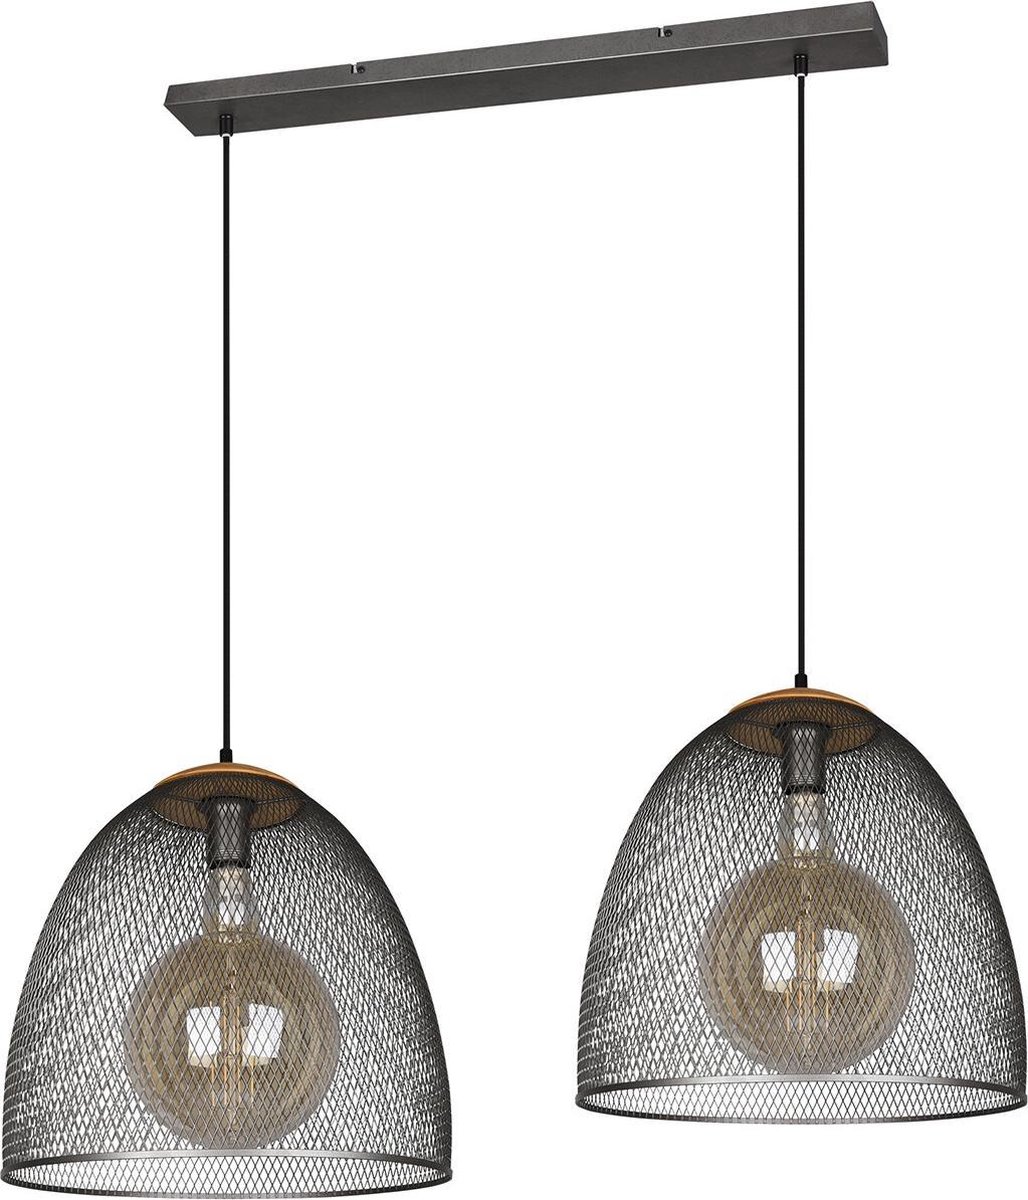 BES LED Led Hanglamp - Trion Ivan - E27 Fitting - 2-lichts - Rond - Antiek Nikkel - Aluminium